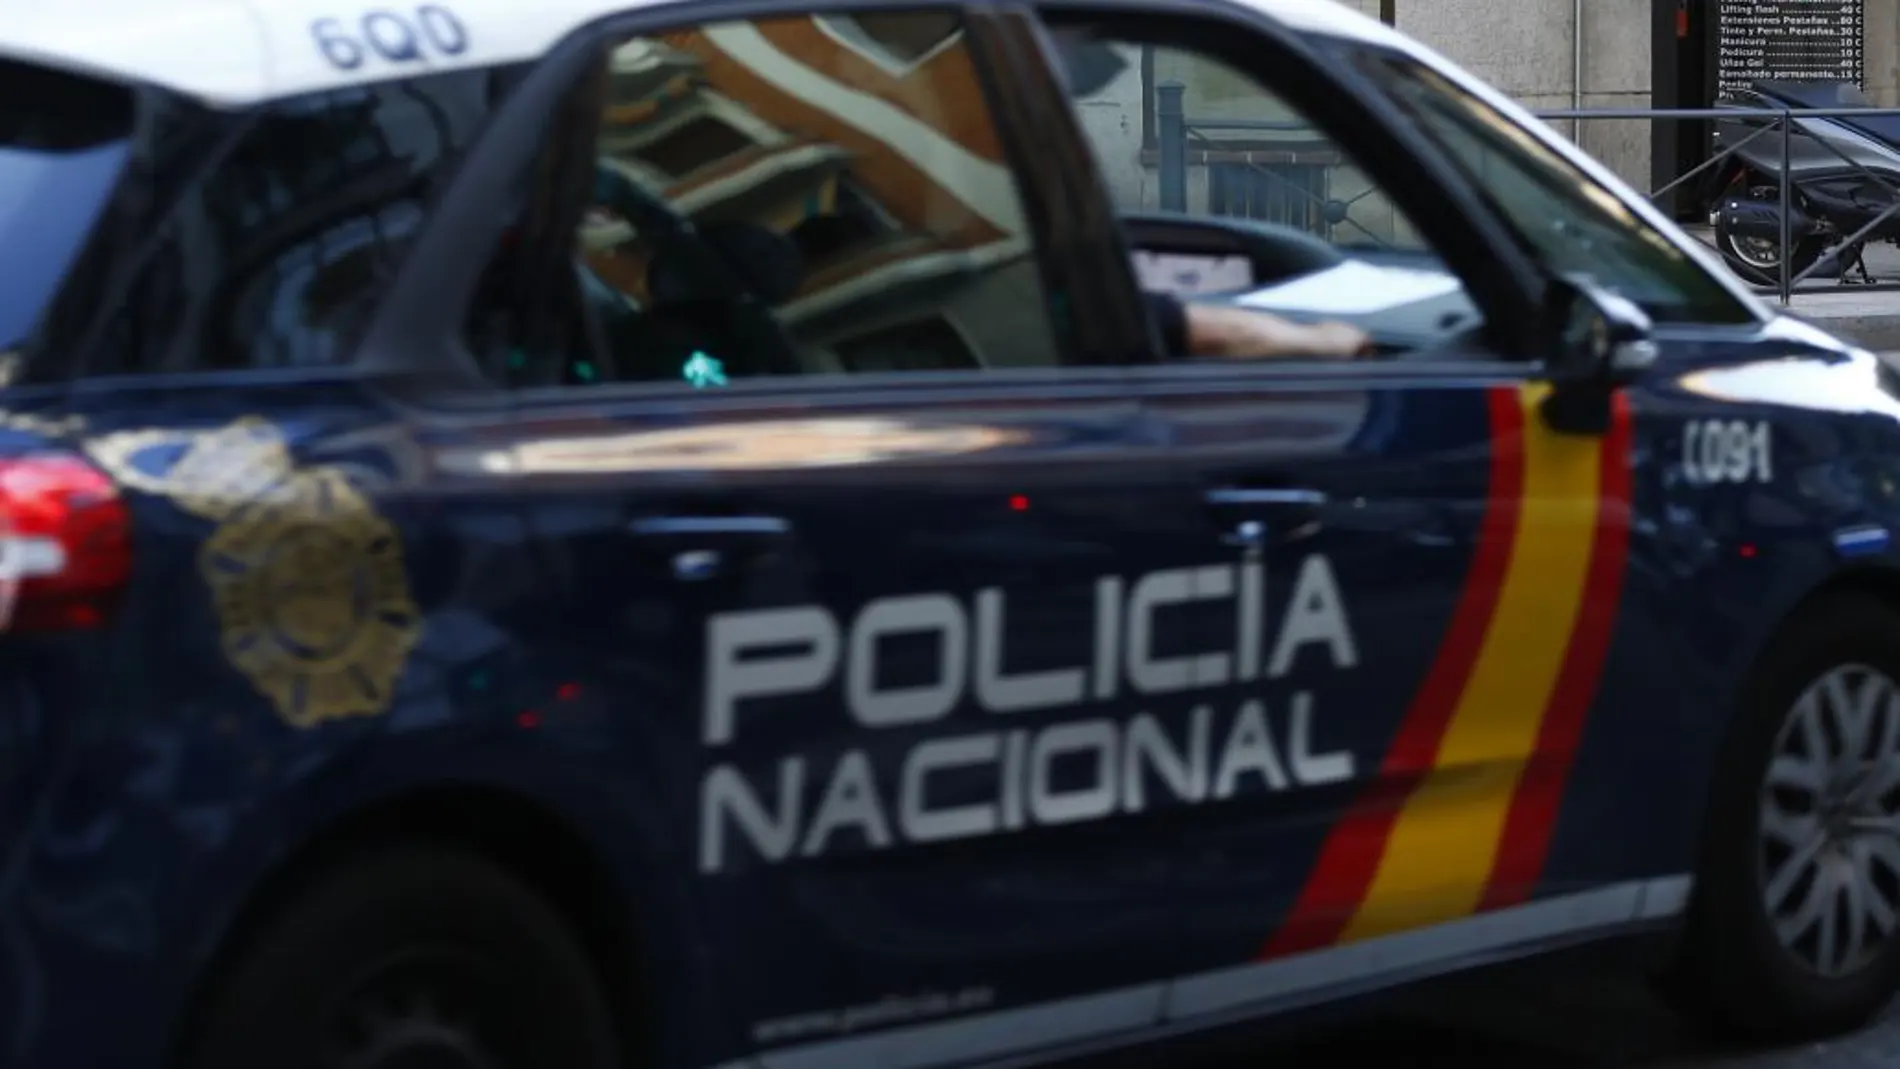 La Policía Nacional detuvo a la mujer con síntomas de embriaguez